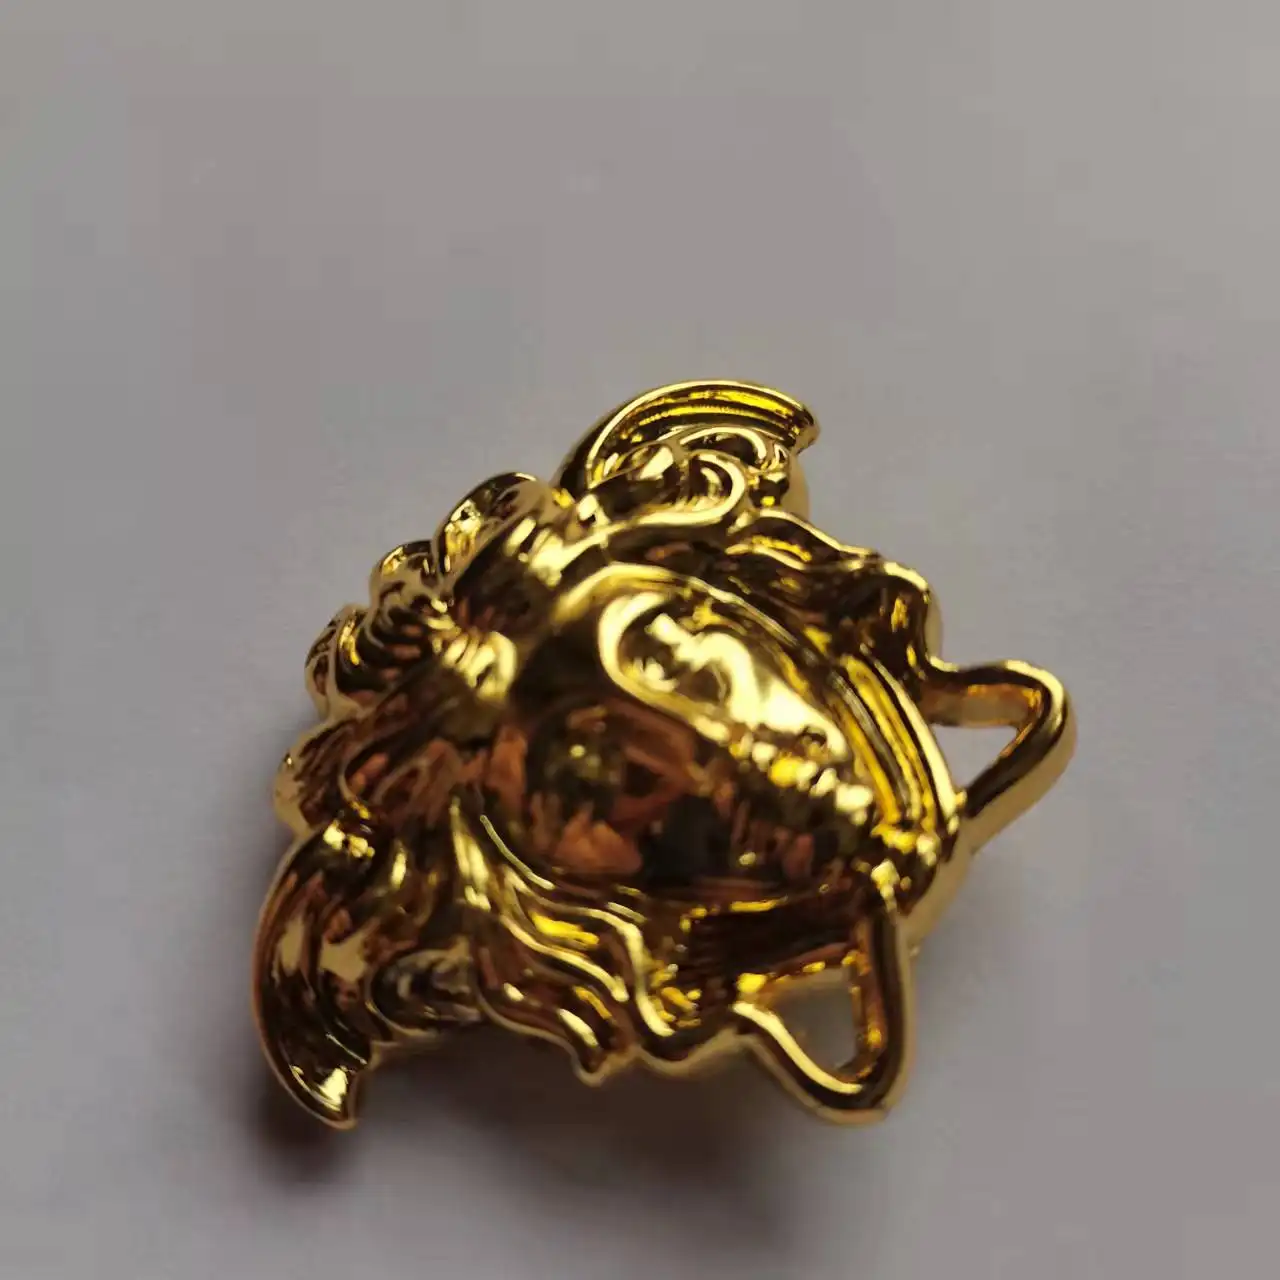 เหรียญโลหะผสมสีโรสโกลด์,เหรียญตราสัญลักษณ์หัวสิงโตสำหรับโซฟาอัลลอยด์สีทองขนาดใหญ่ Medusa สัญลักษณ์ใบหน้าสำหรับเฟอร์นิเจอร์